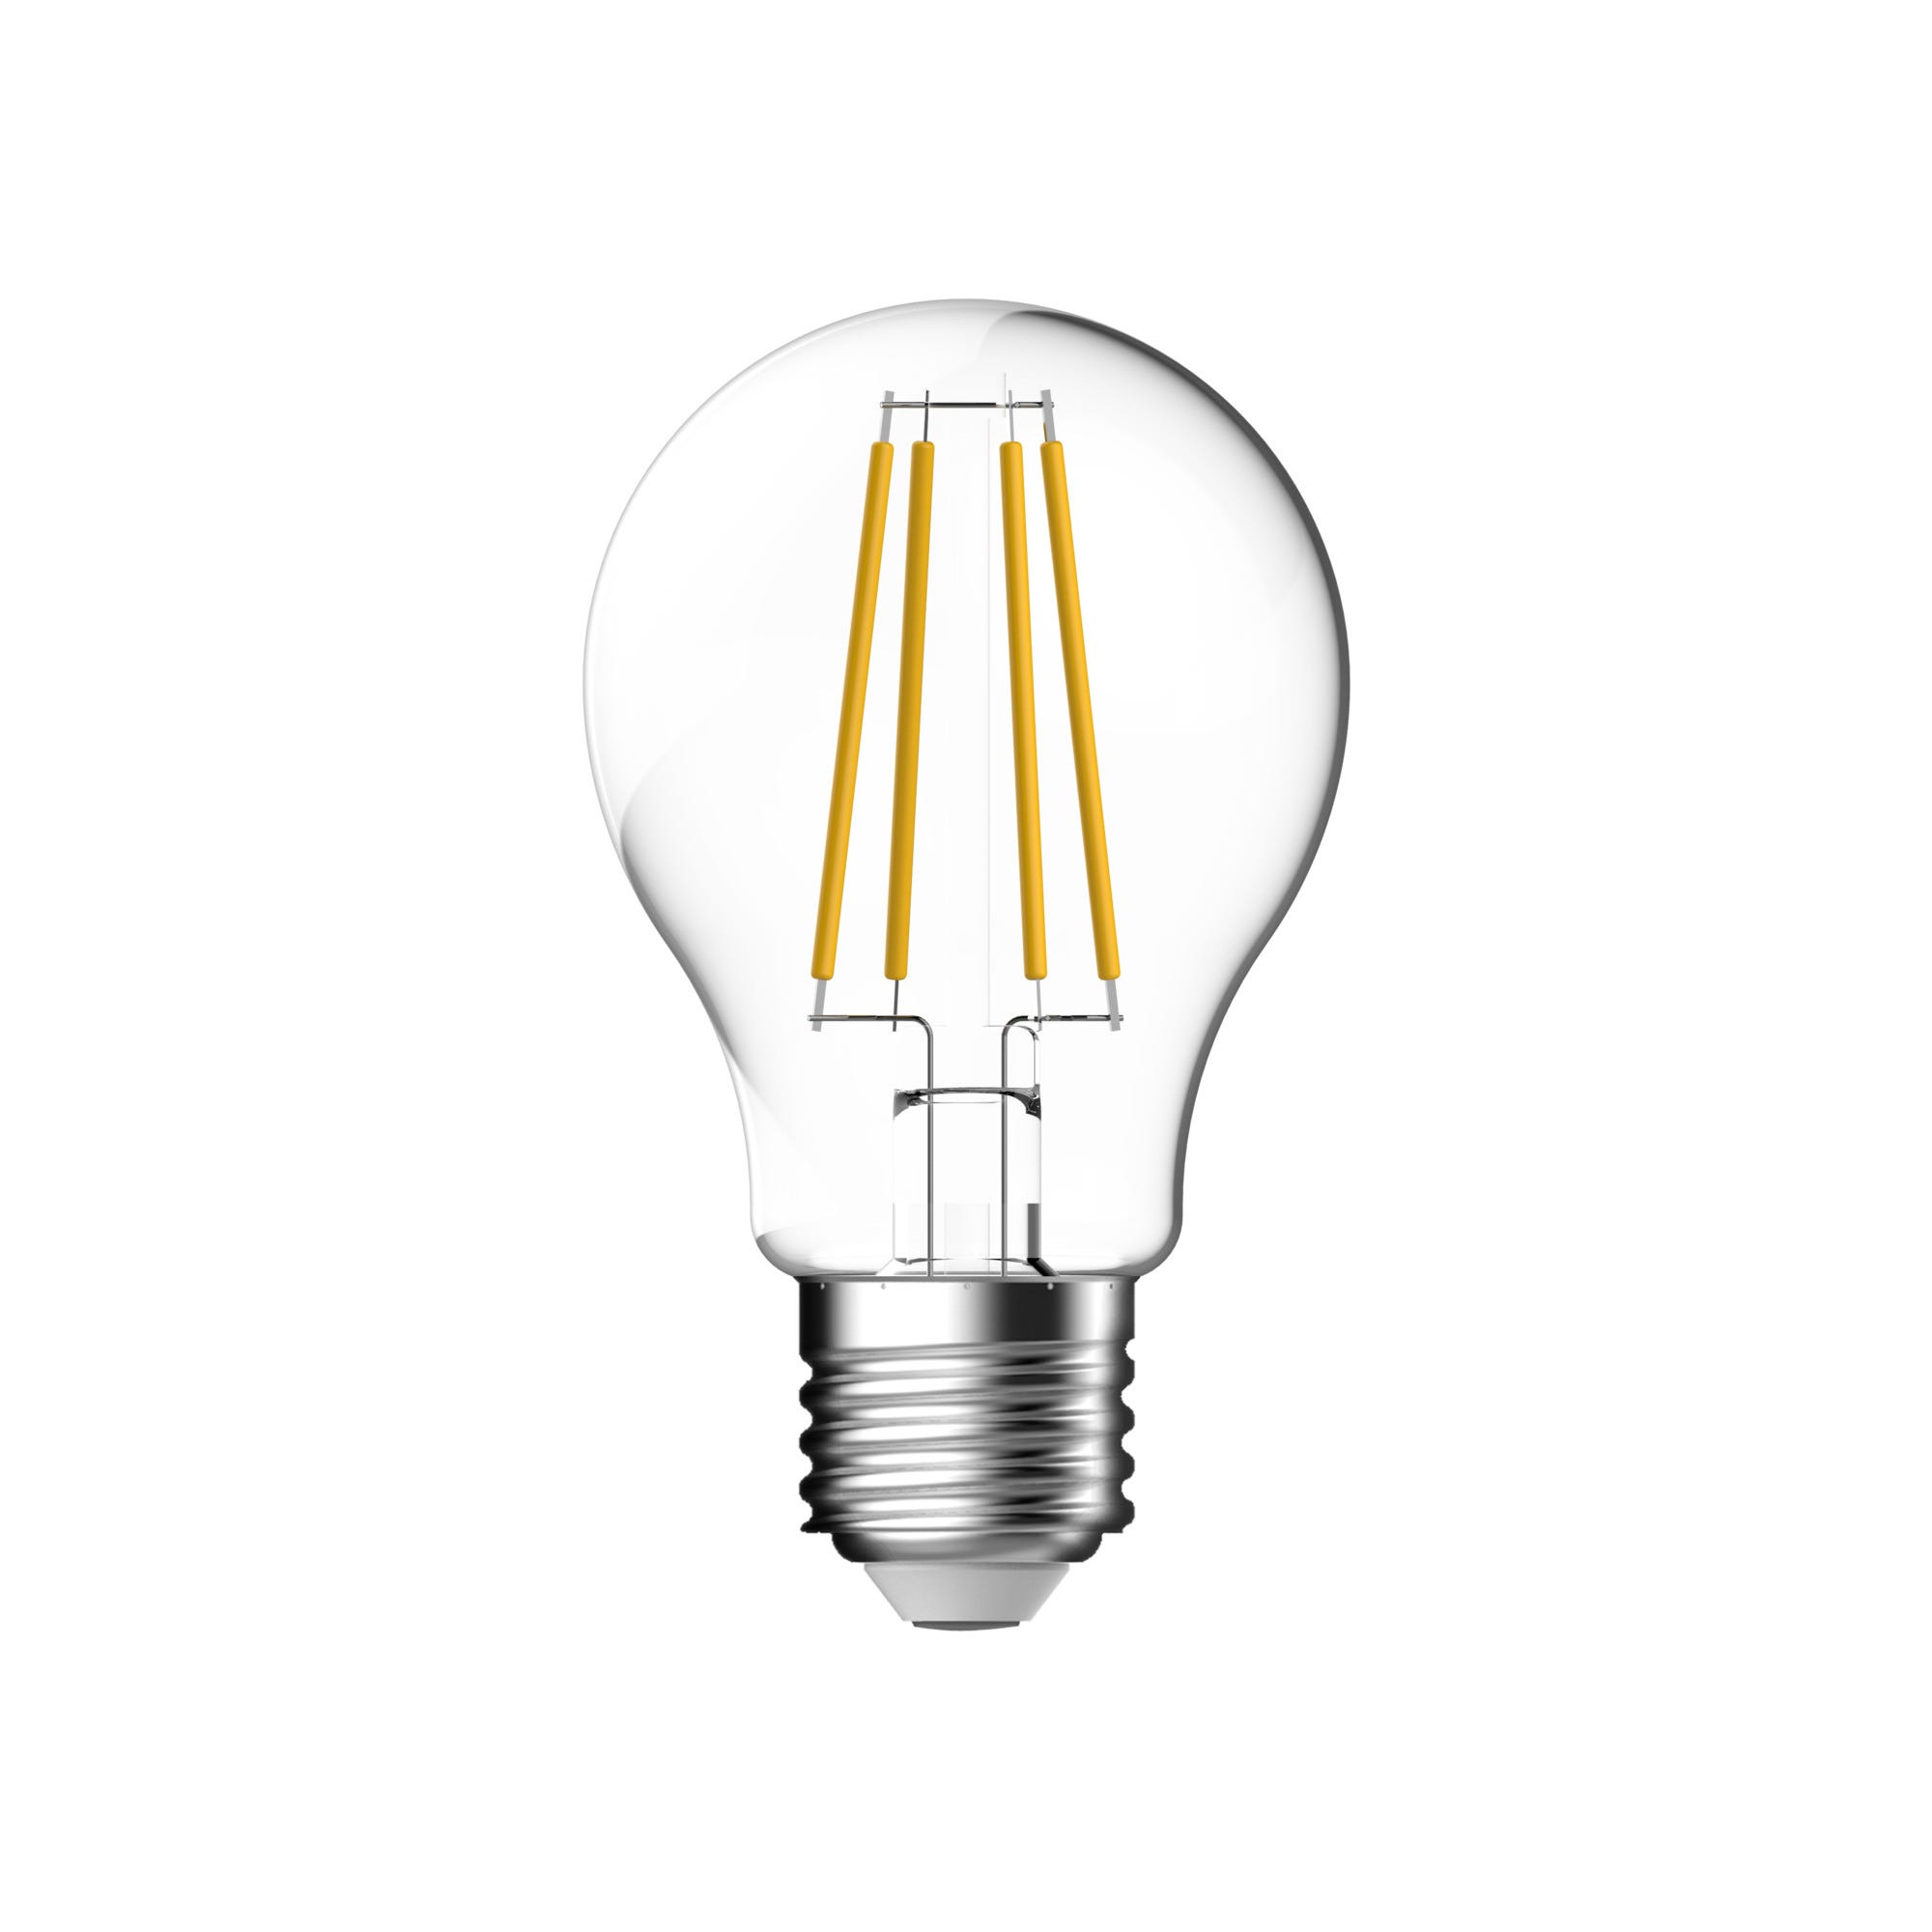 Ampoule LED E27 blanc chaud  - NORDLUX 0